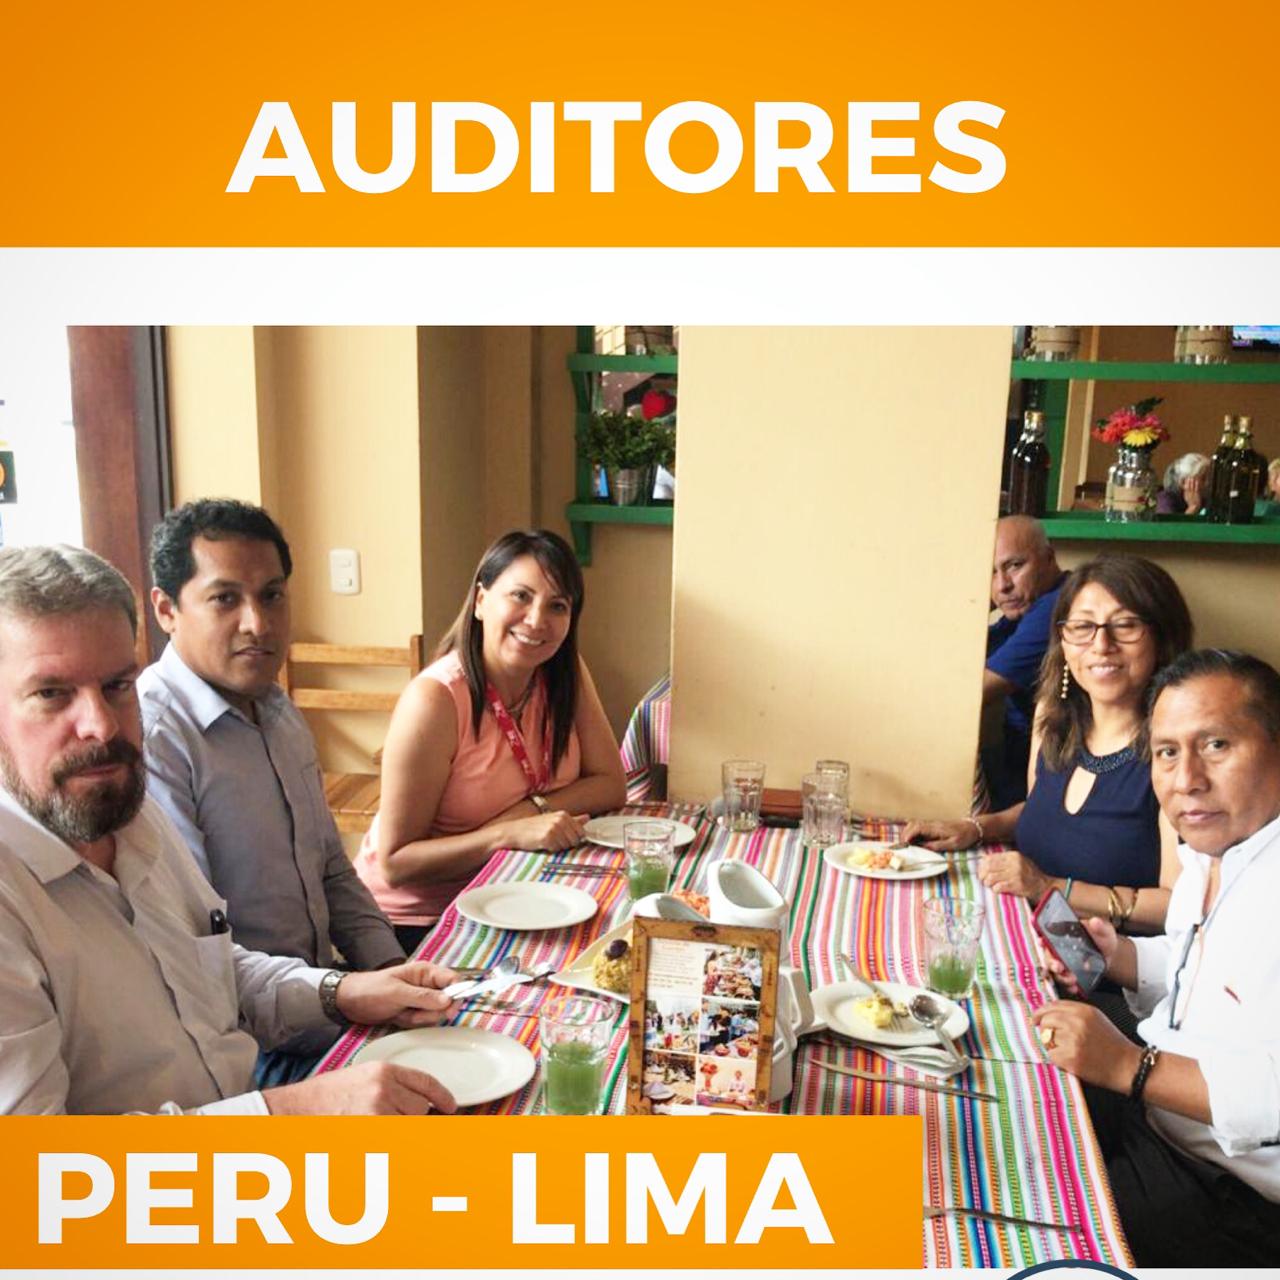 No momento você está vendo Enquanto isso, nossos Auditores diretamente do Peru-Lima